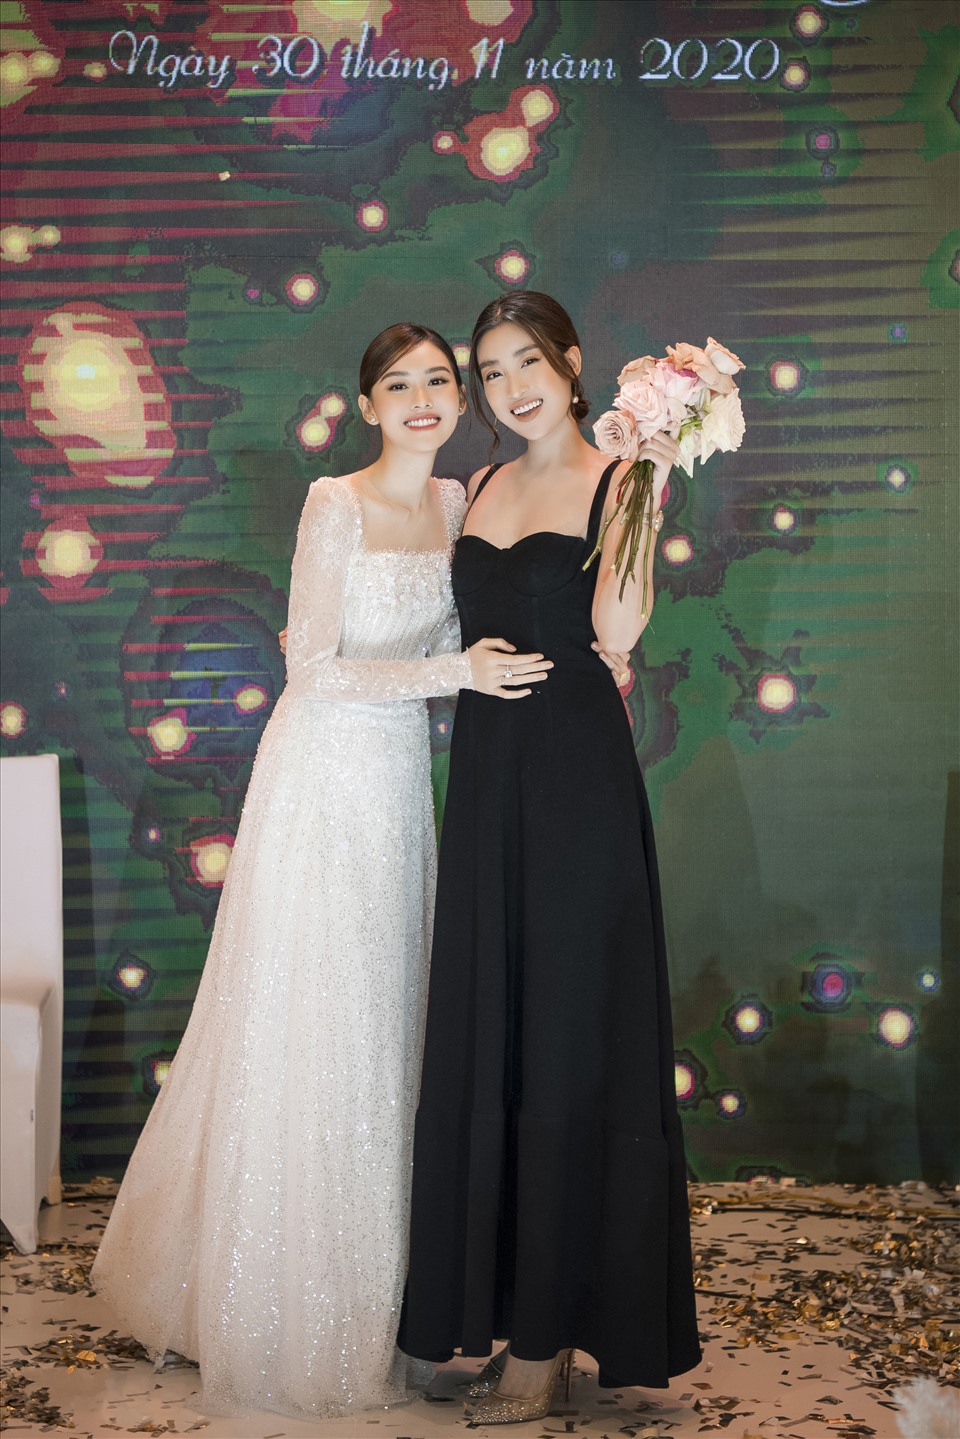 4 sao Việt được 'chốt đơn' sau khi bắt hoa cưới: Đỗ Mỹ Linh và Ngô Thanh Vân được trao lại, 1 mỹ nhân vừa nhập hội - Ảnh 6.